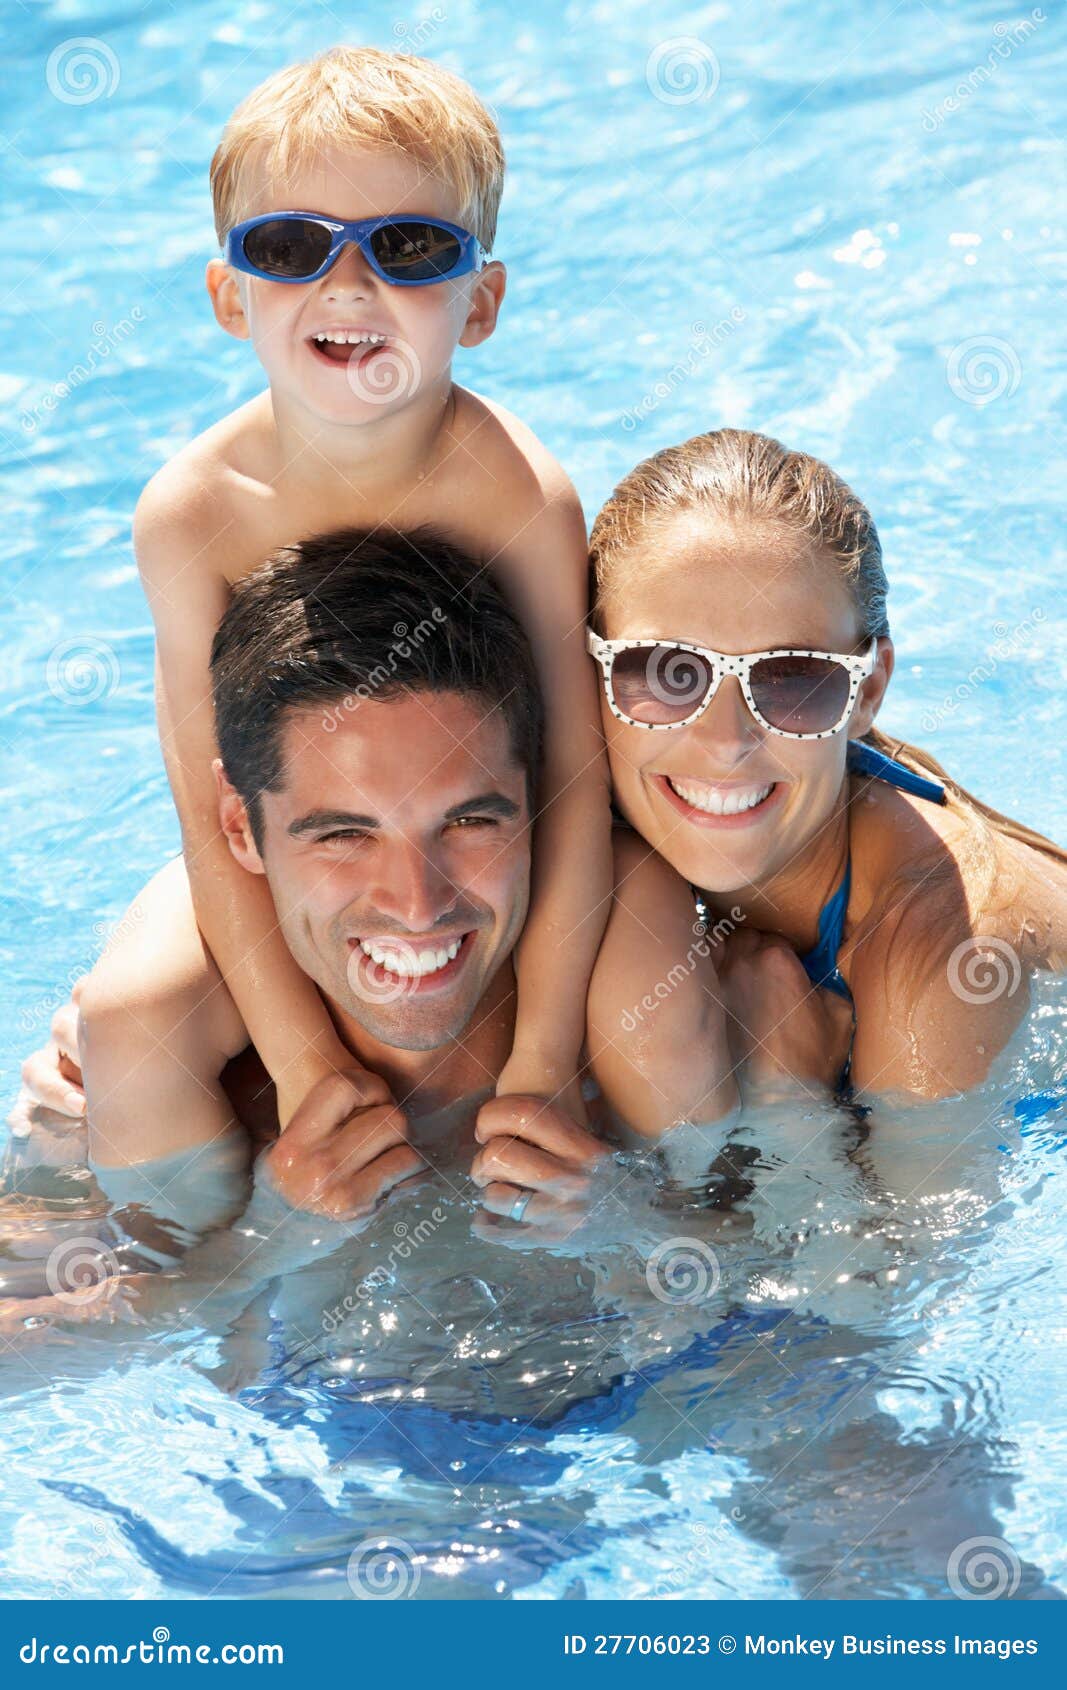 family having fun in swimming pool